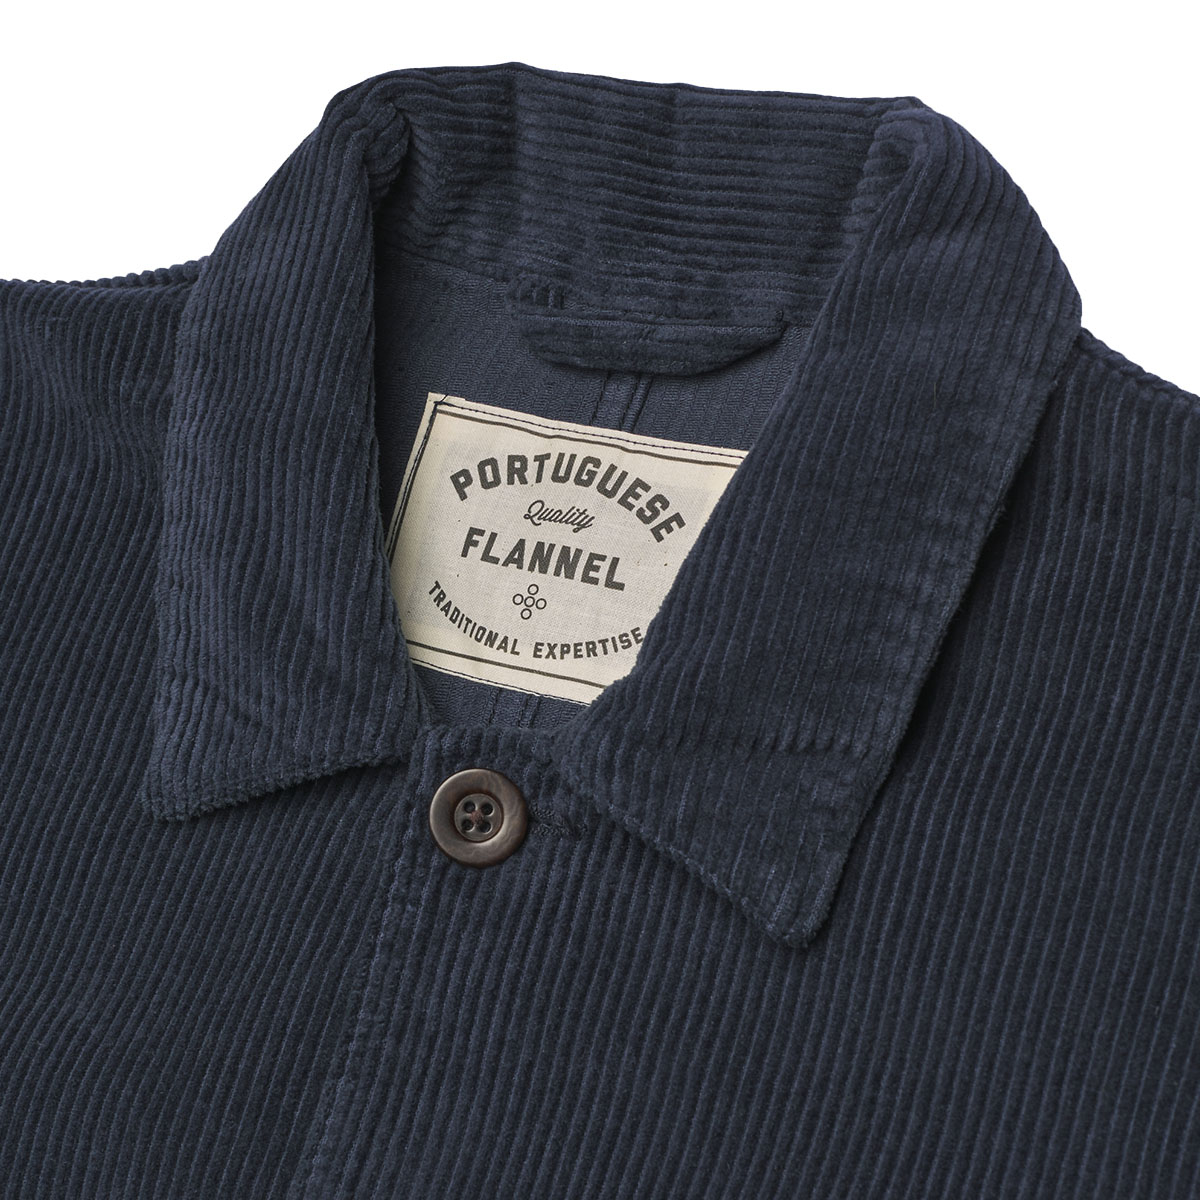 Portuguese Flannel Labura Cotton-Corduroy Overshirt Blue, hergestellt aus den feinsten exklusiven Stoffen